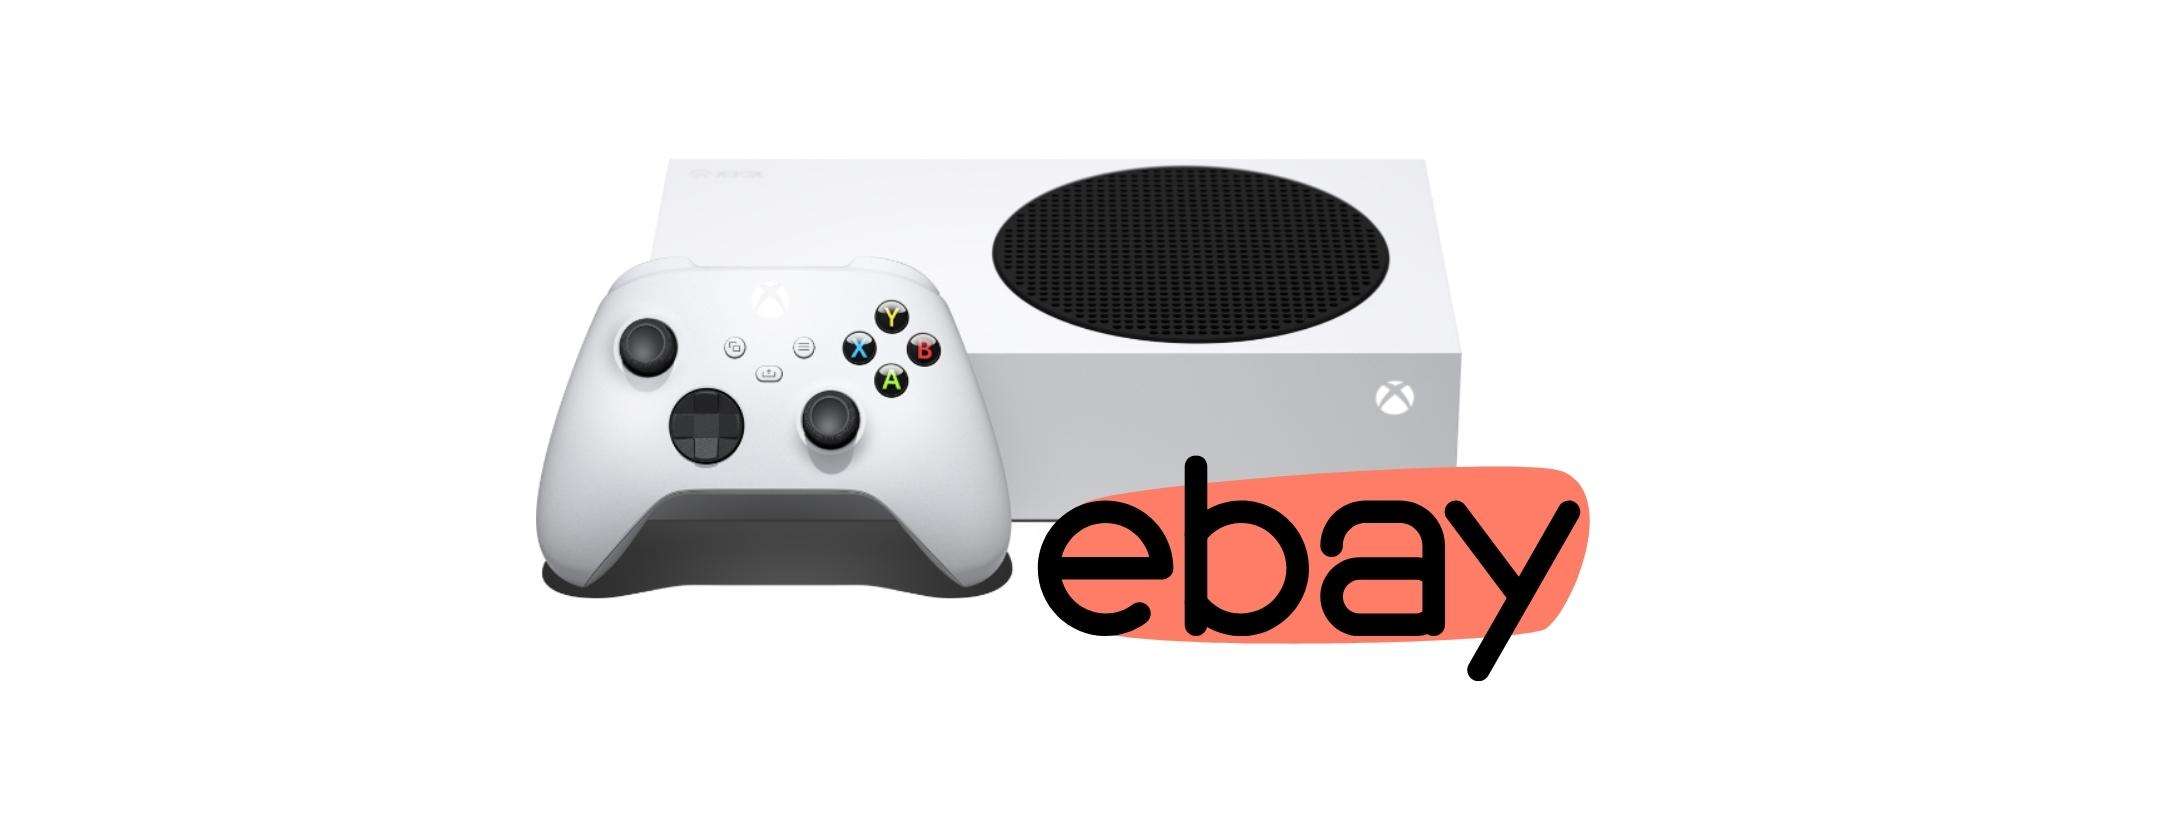 Leia ze Mooie jurk Xbox Series S: è arrivato il tuo memento, risparmia 50 euro su eBay